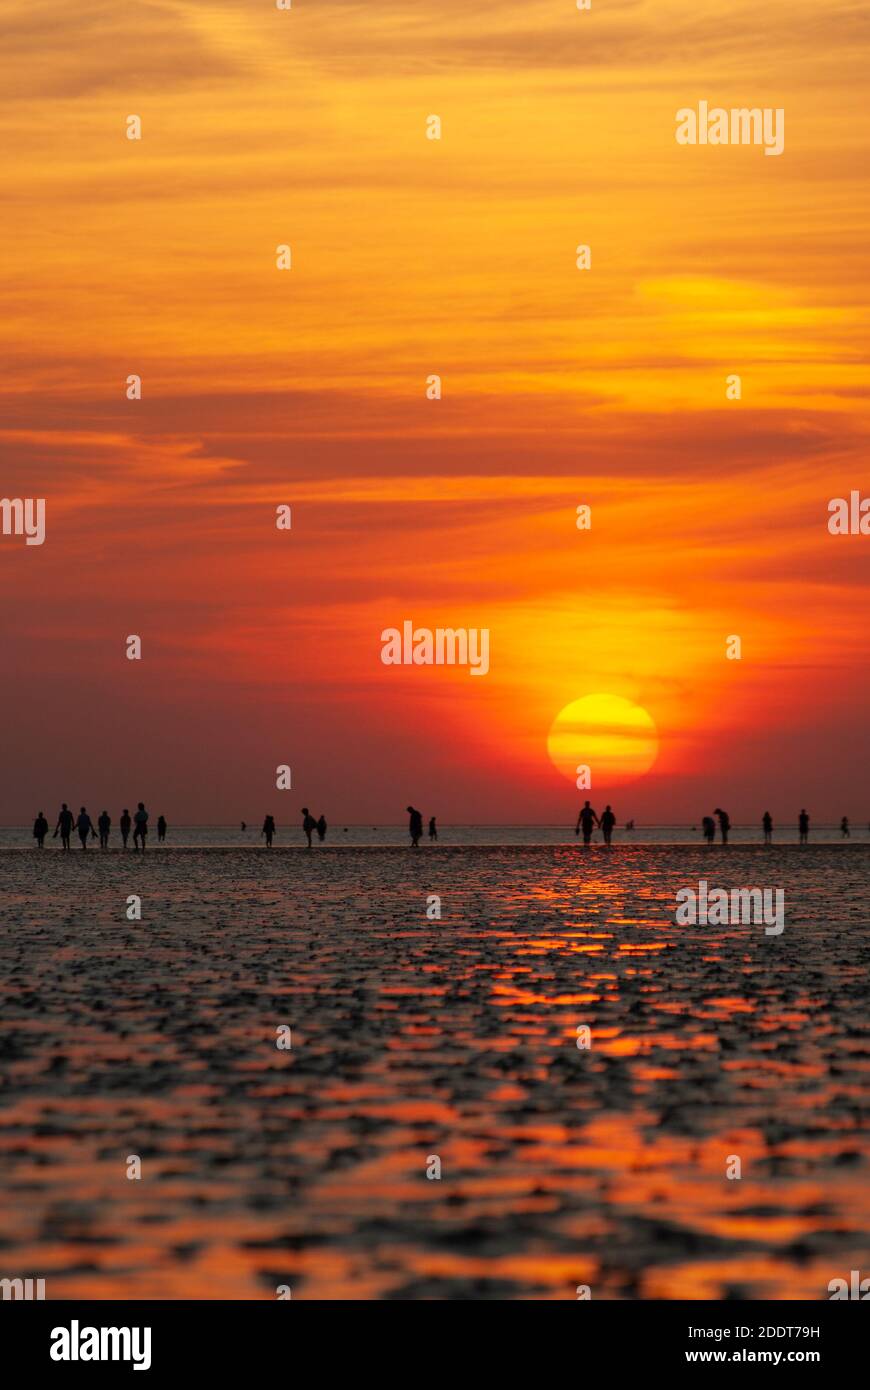 Image verticale avec silhouettes de personnes à la plage et watt devant le soleil couchant. Banque D'Images